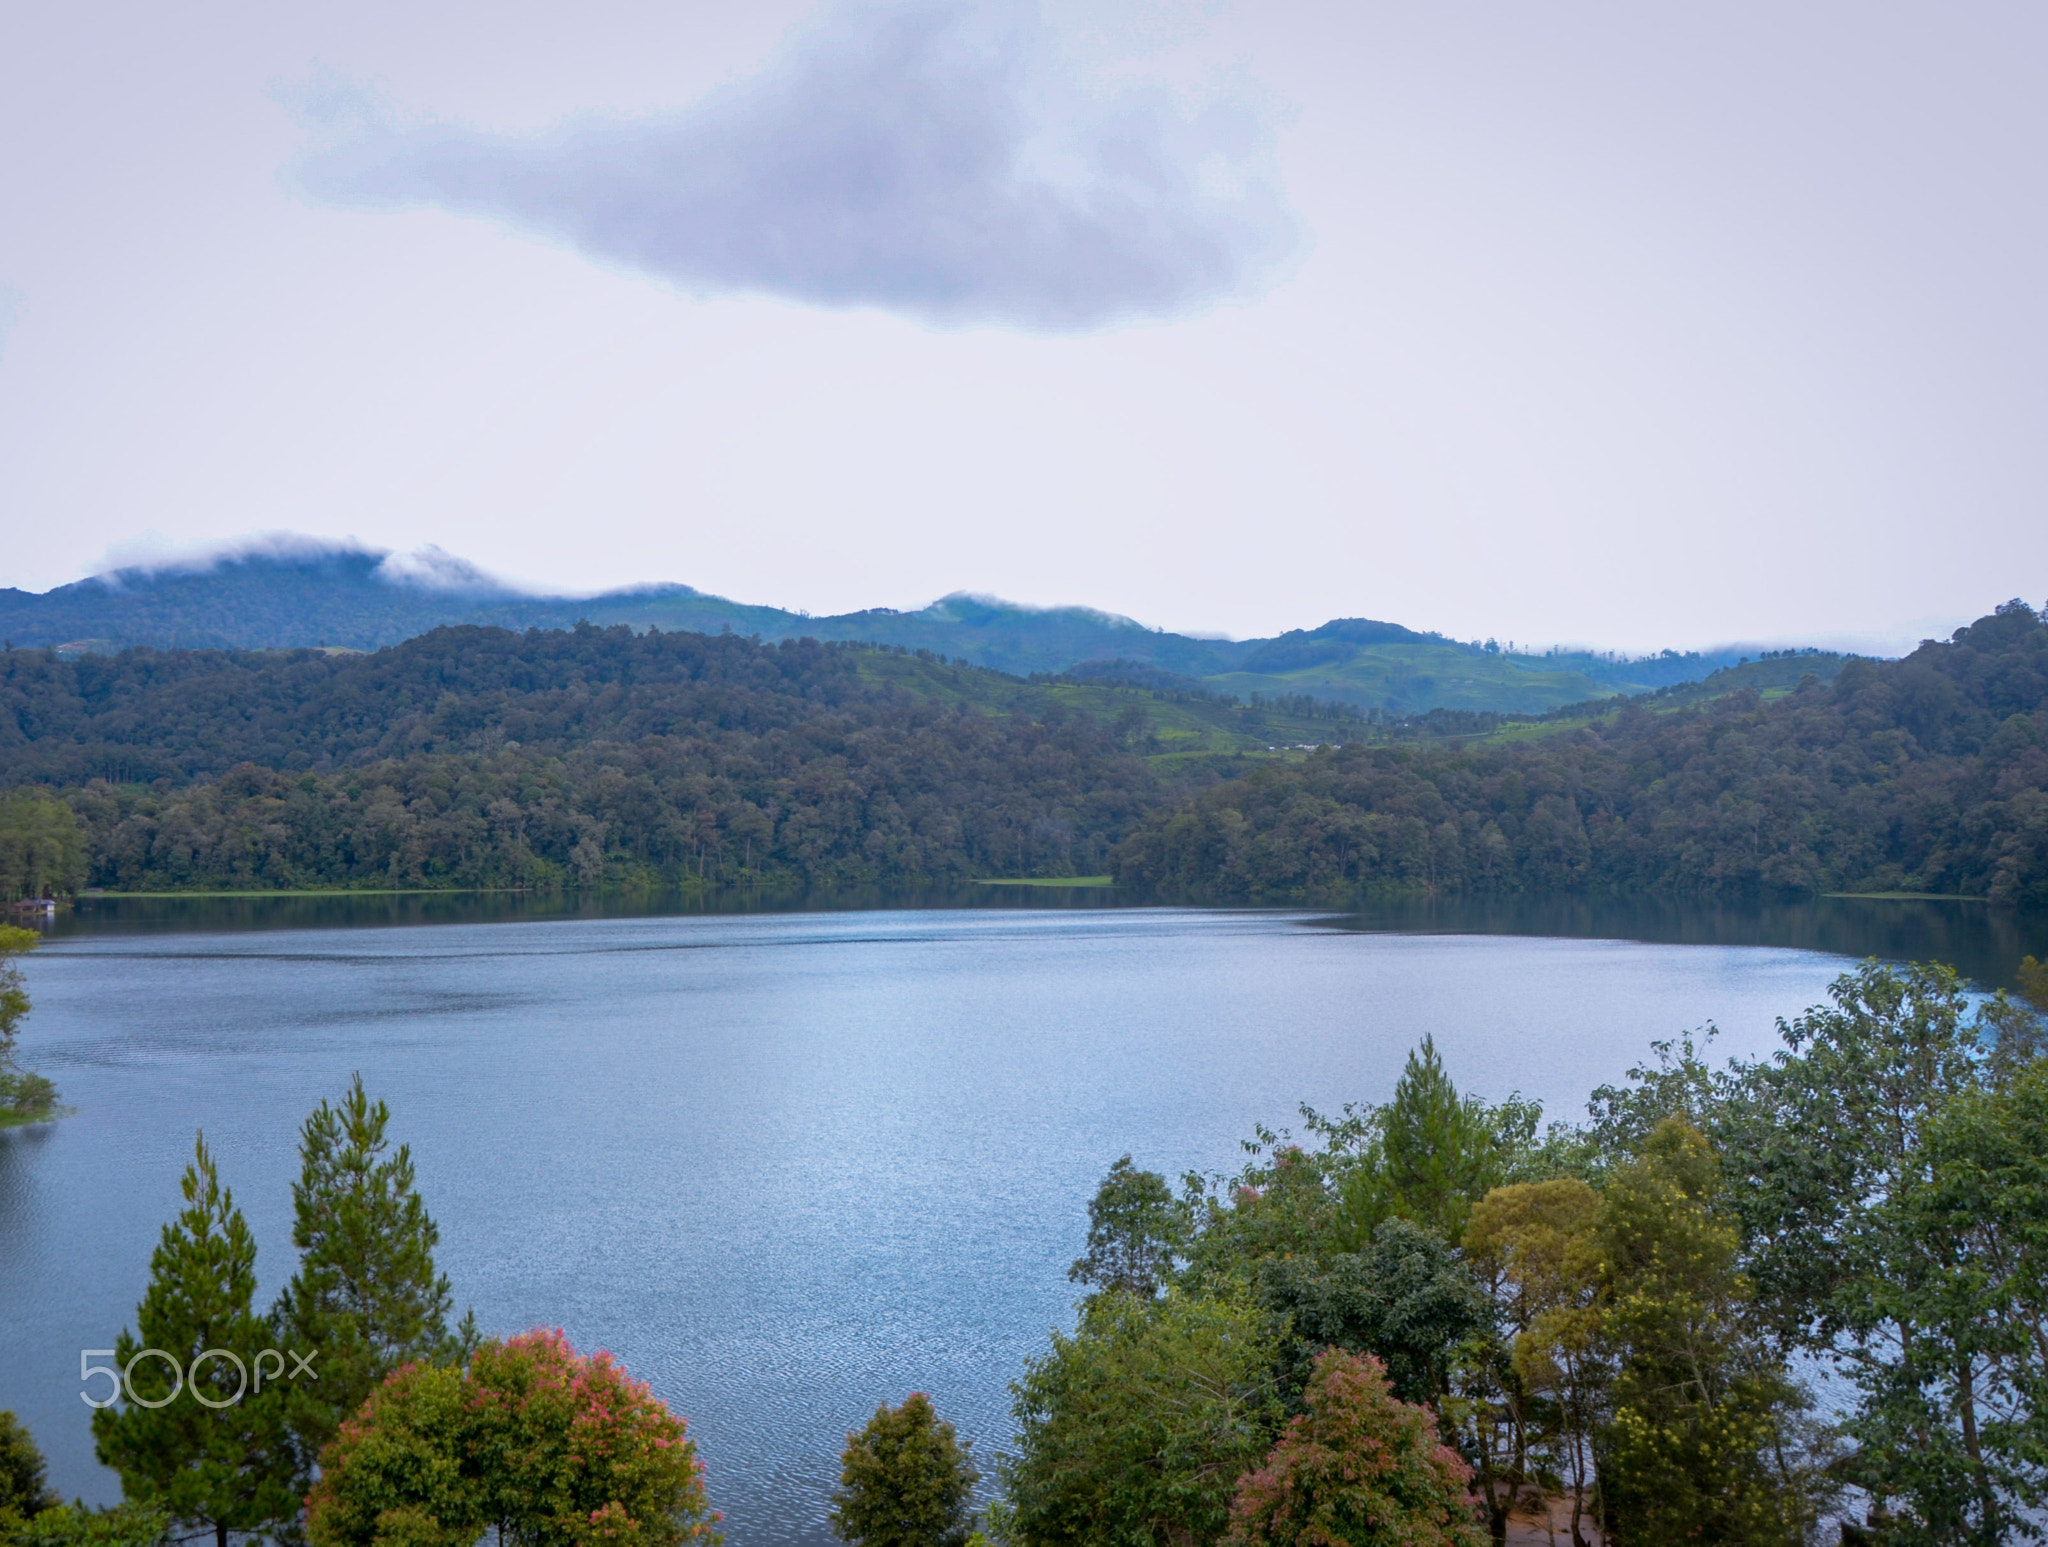 Patenggang Lake